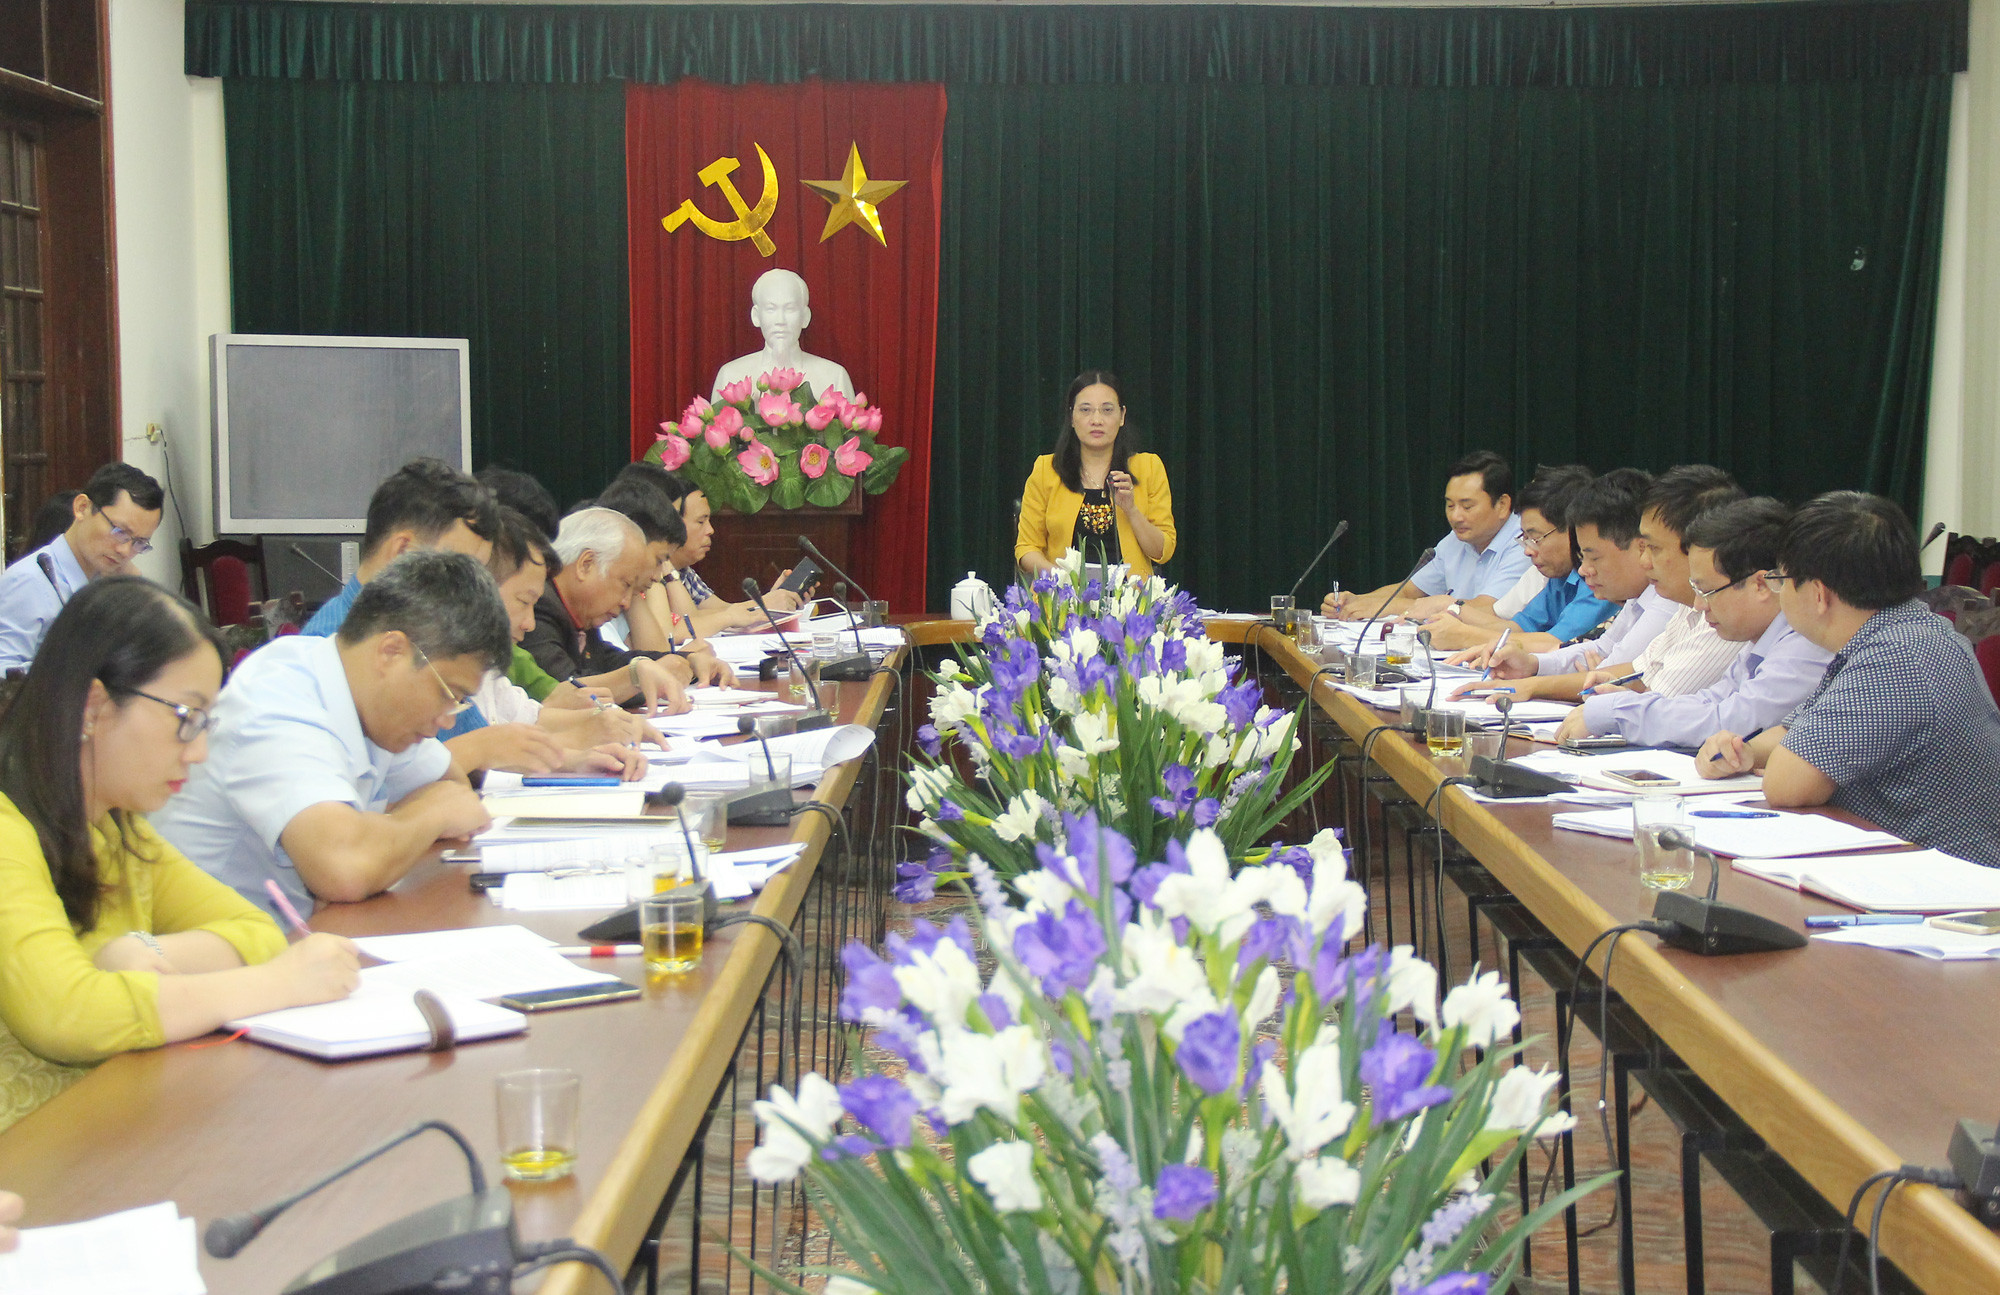   Đồng chí Cao Thị Hiền - Ủy viên Ban Thường vụ Tỉnh ủy, Phó Chủ tịch HĐND tỉnh chủ trì cuộc làm việc. Ảnh: Mai Hoa